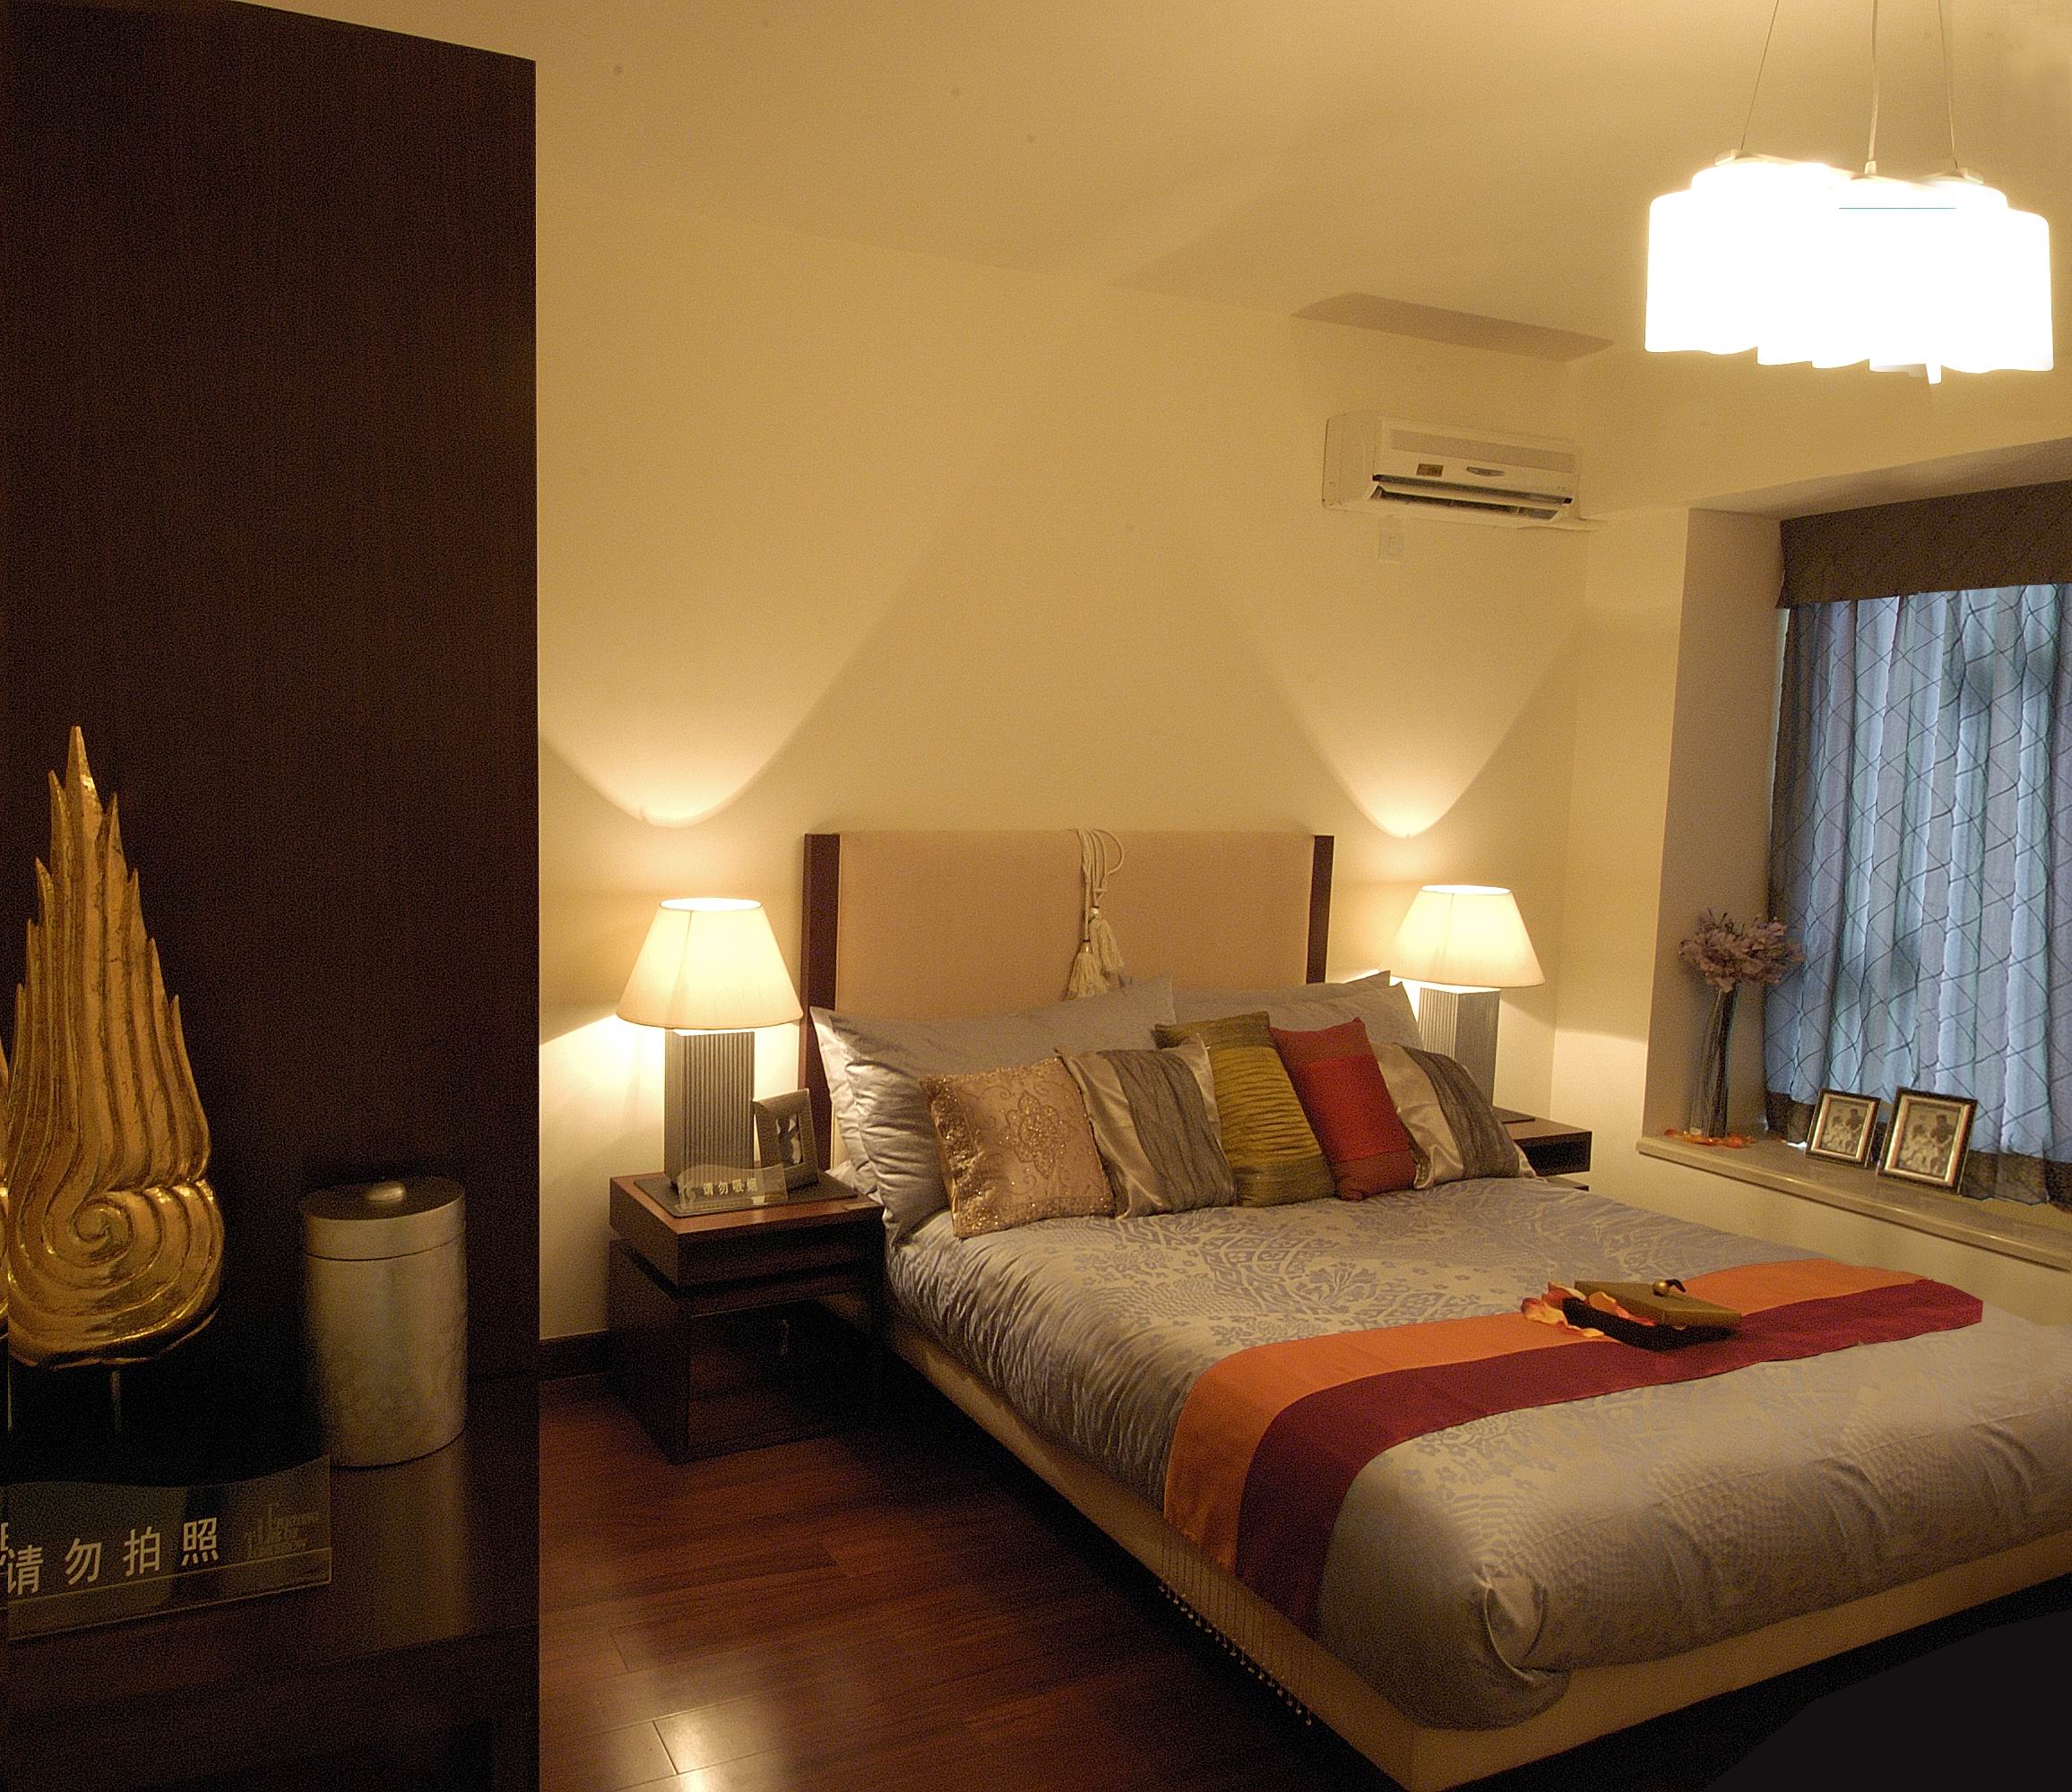 公寓 中式 卧室图片来自紫禁尚品国际装饰小孔在中式风格泛海国际案例的分享